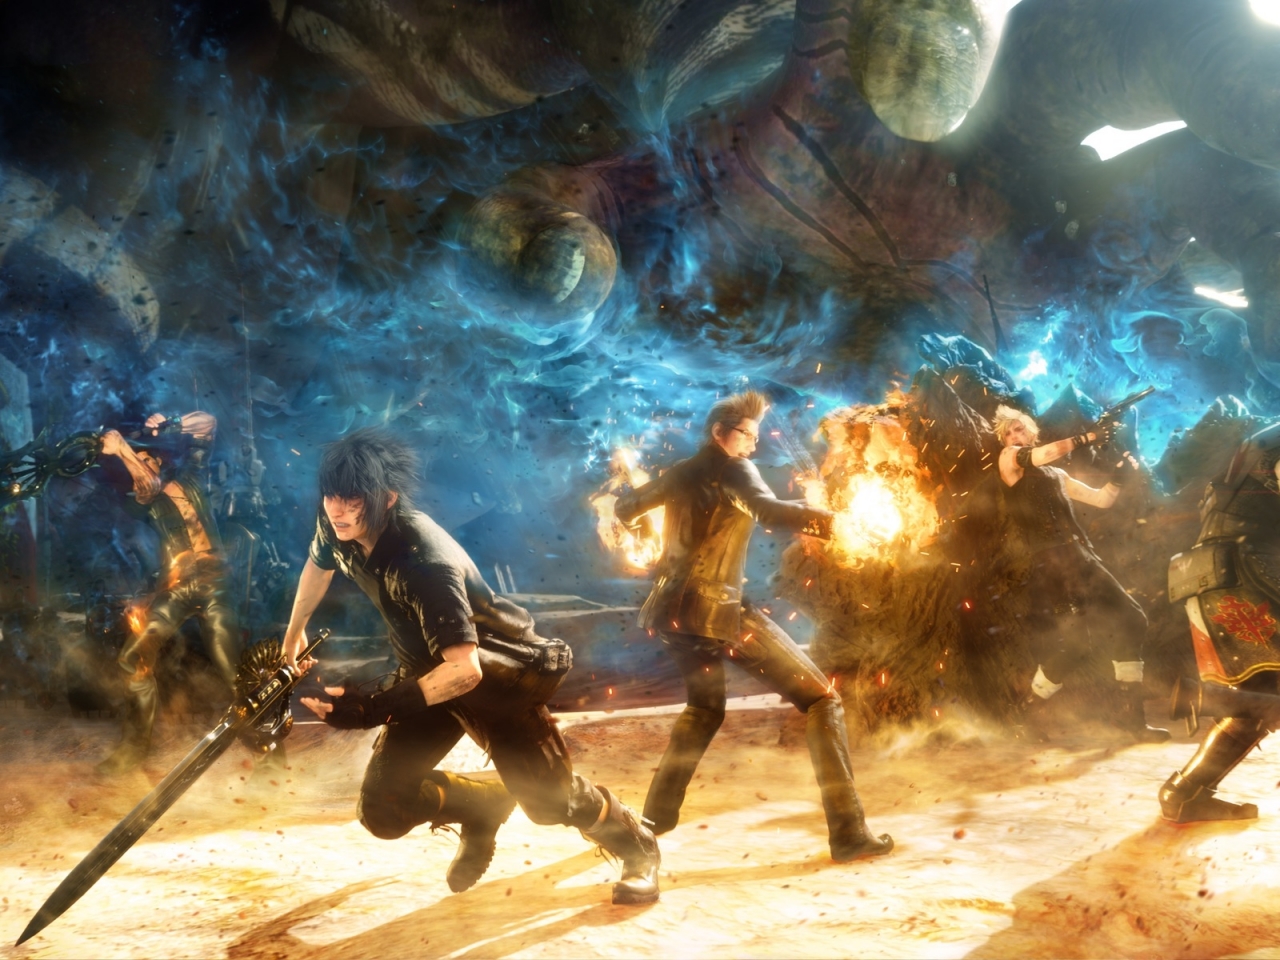 Final Fantasy V Battle for 1280 x 960 resolution